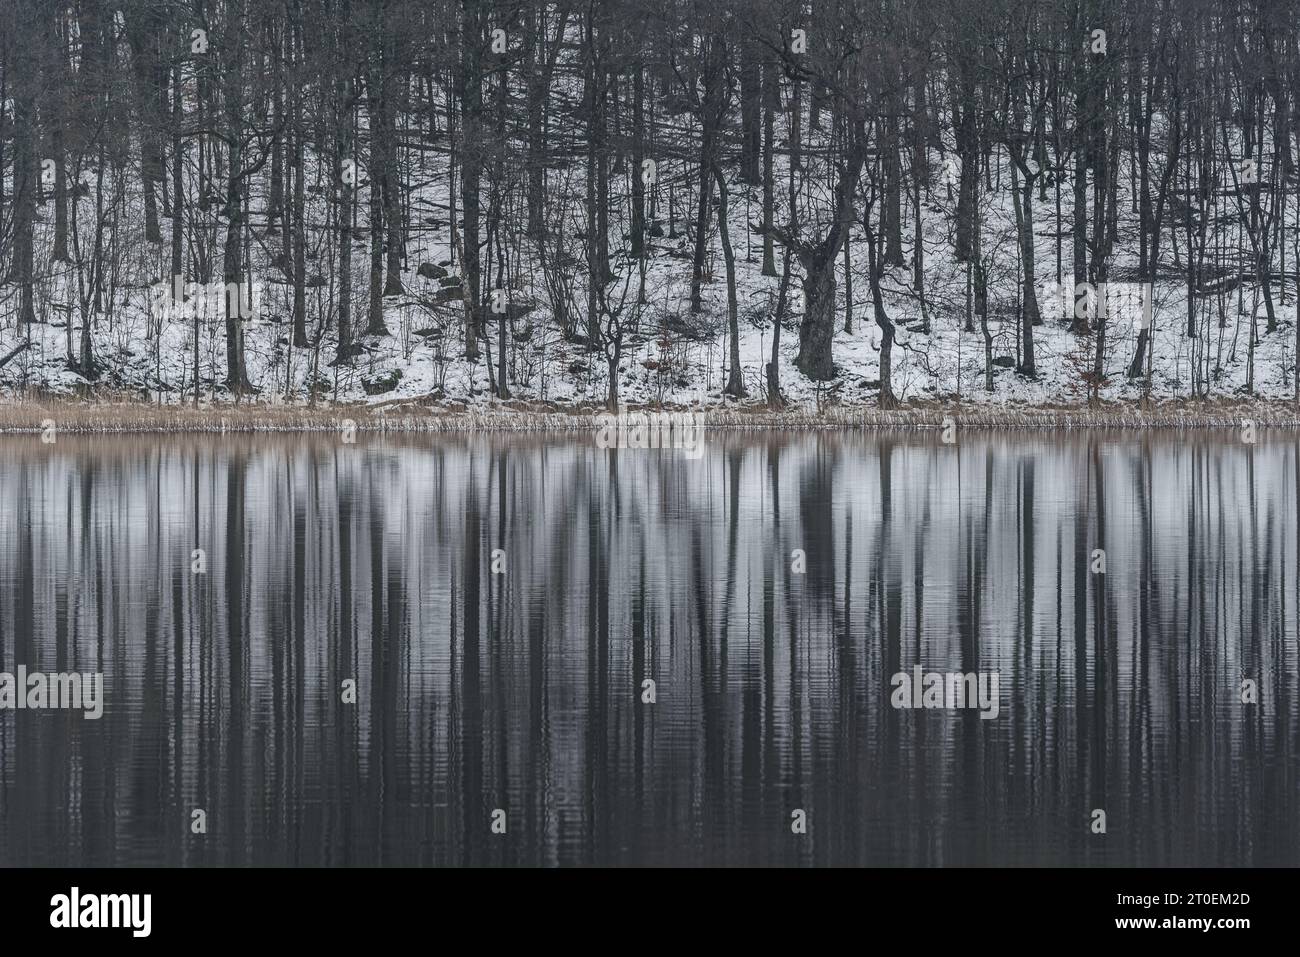 Tranquillité hivernale dans un paysage suédois enneigé avec des arbres reflétés sur un lac calme. Banque D'Images